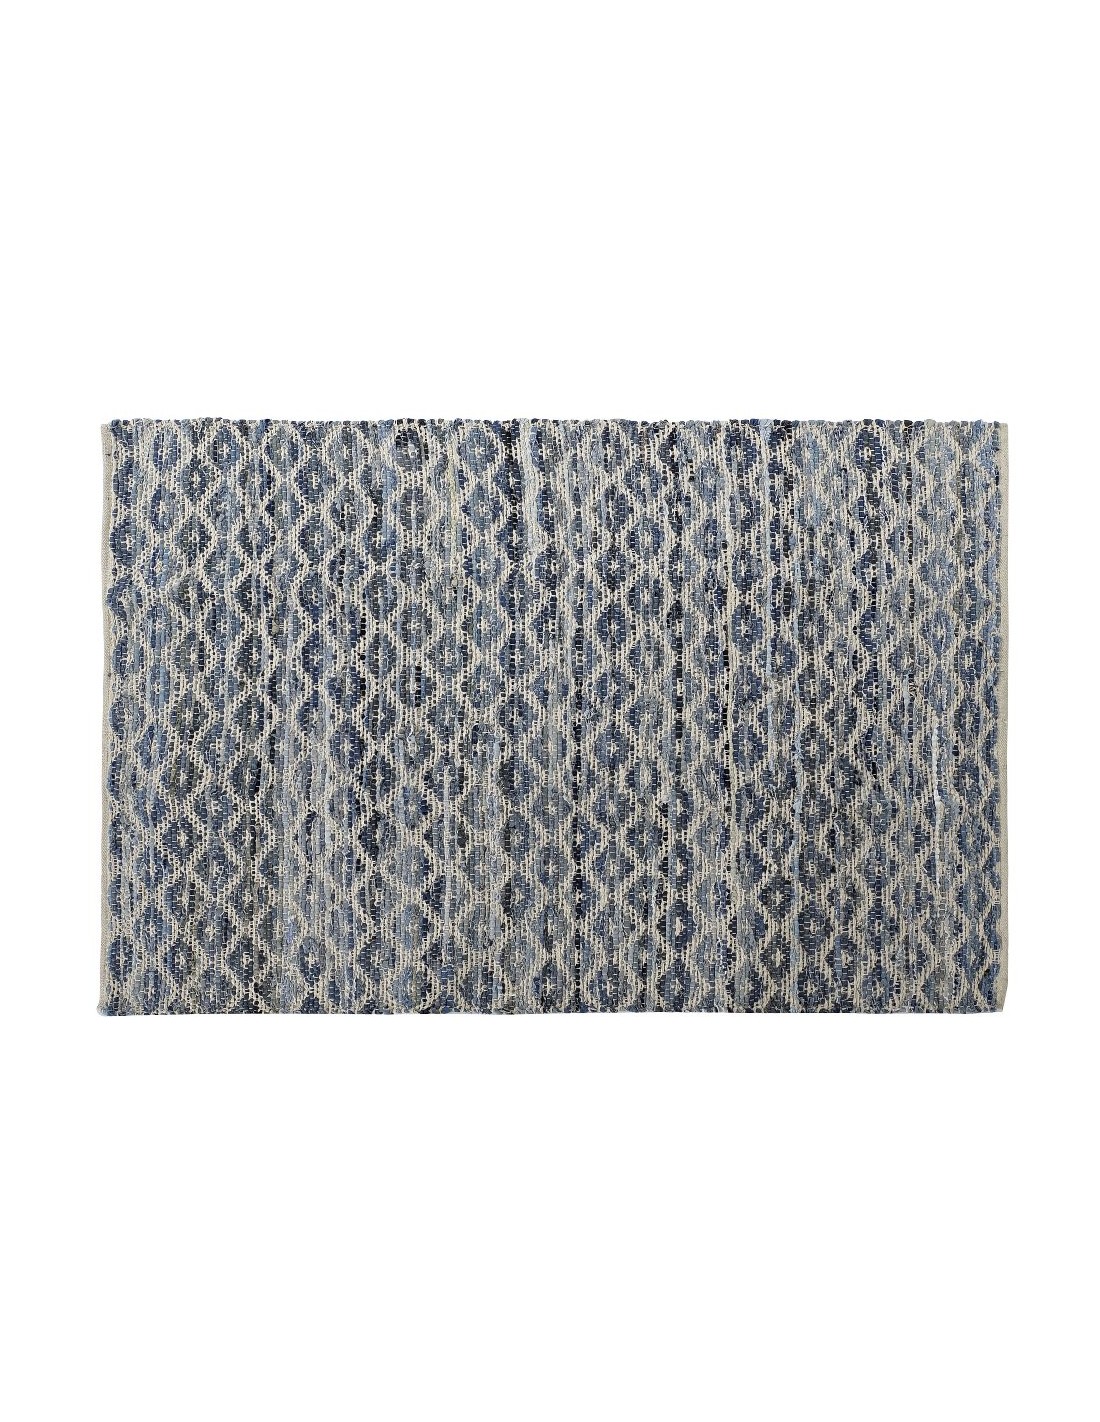 Alfombra jarapa gris, alfombra hogar, alfombra multiusos